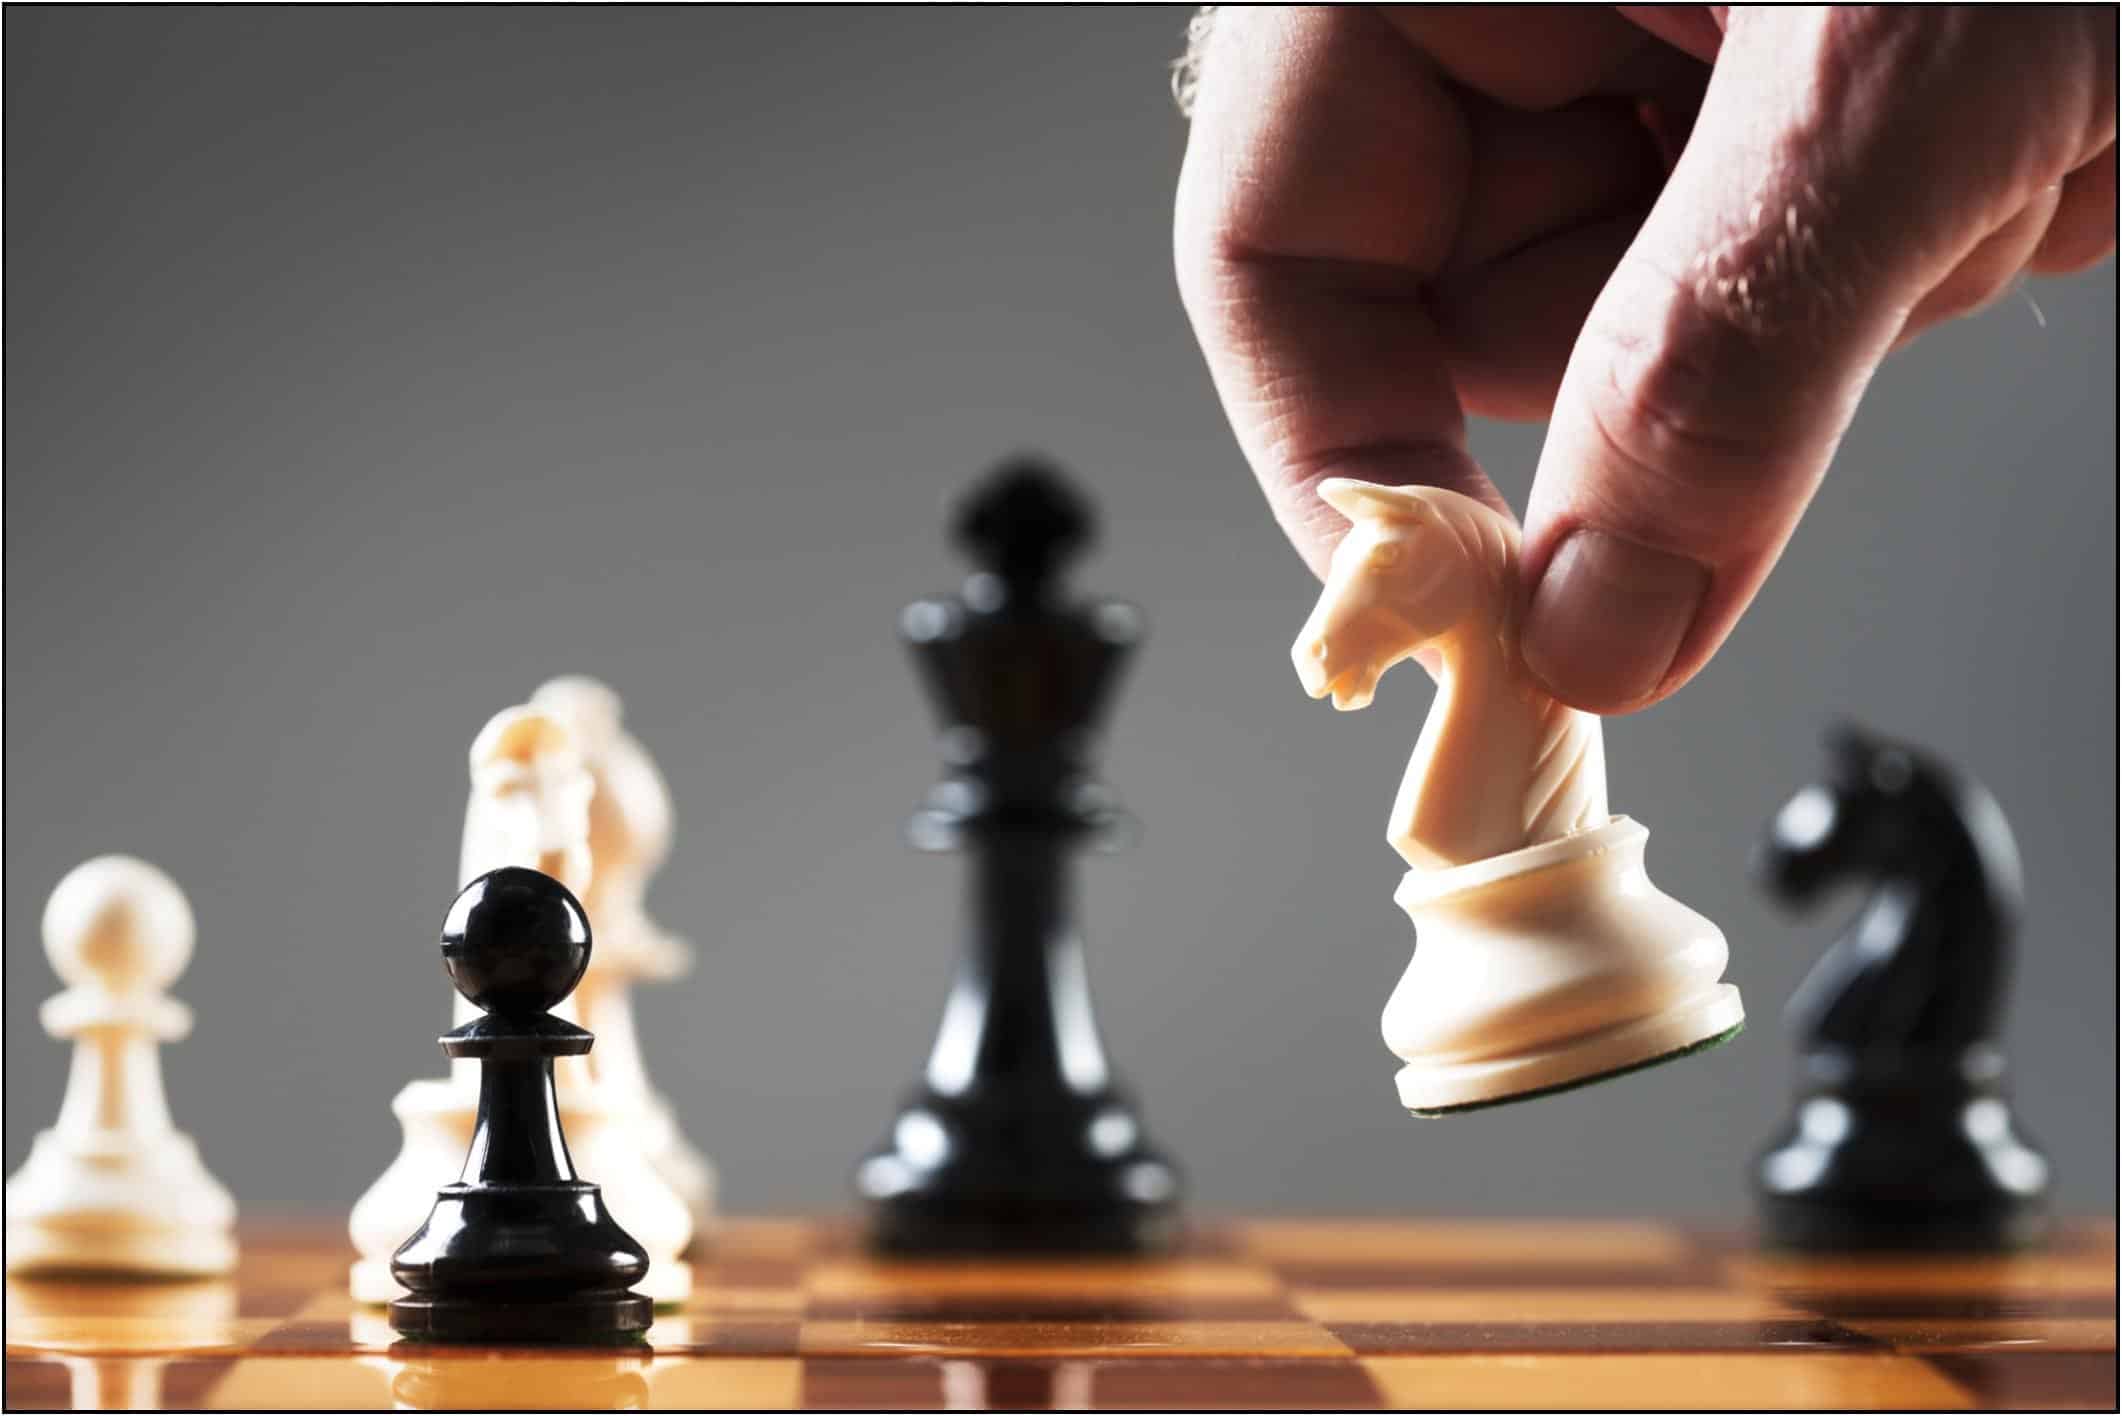 šachmatų strategijos prekybos figūros